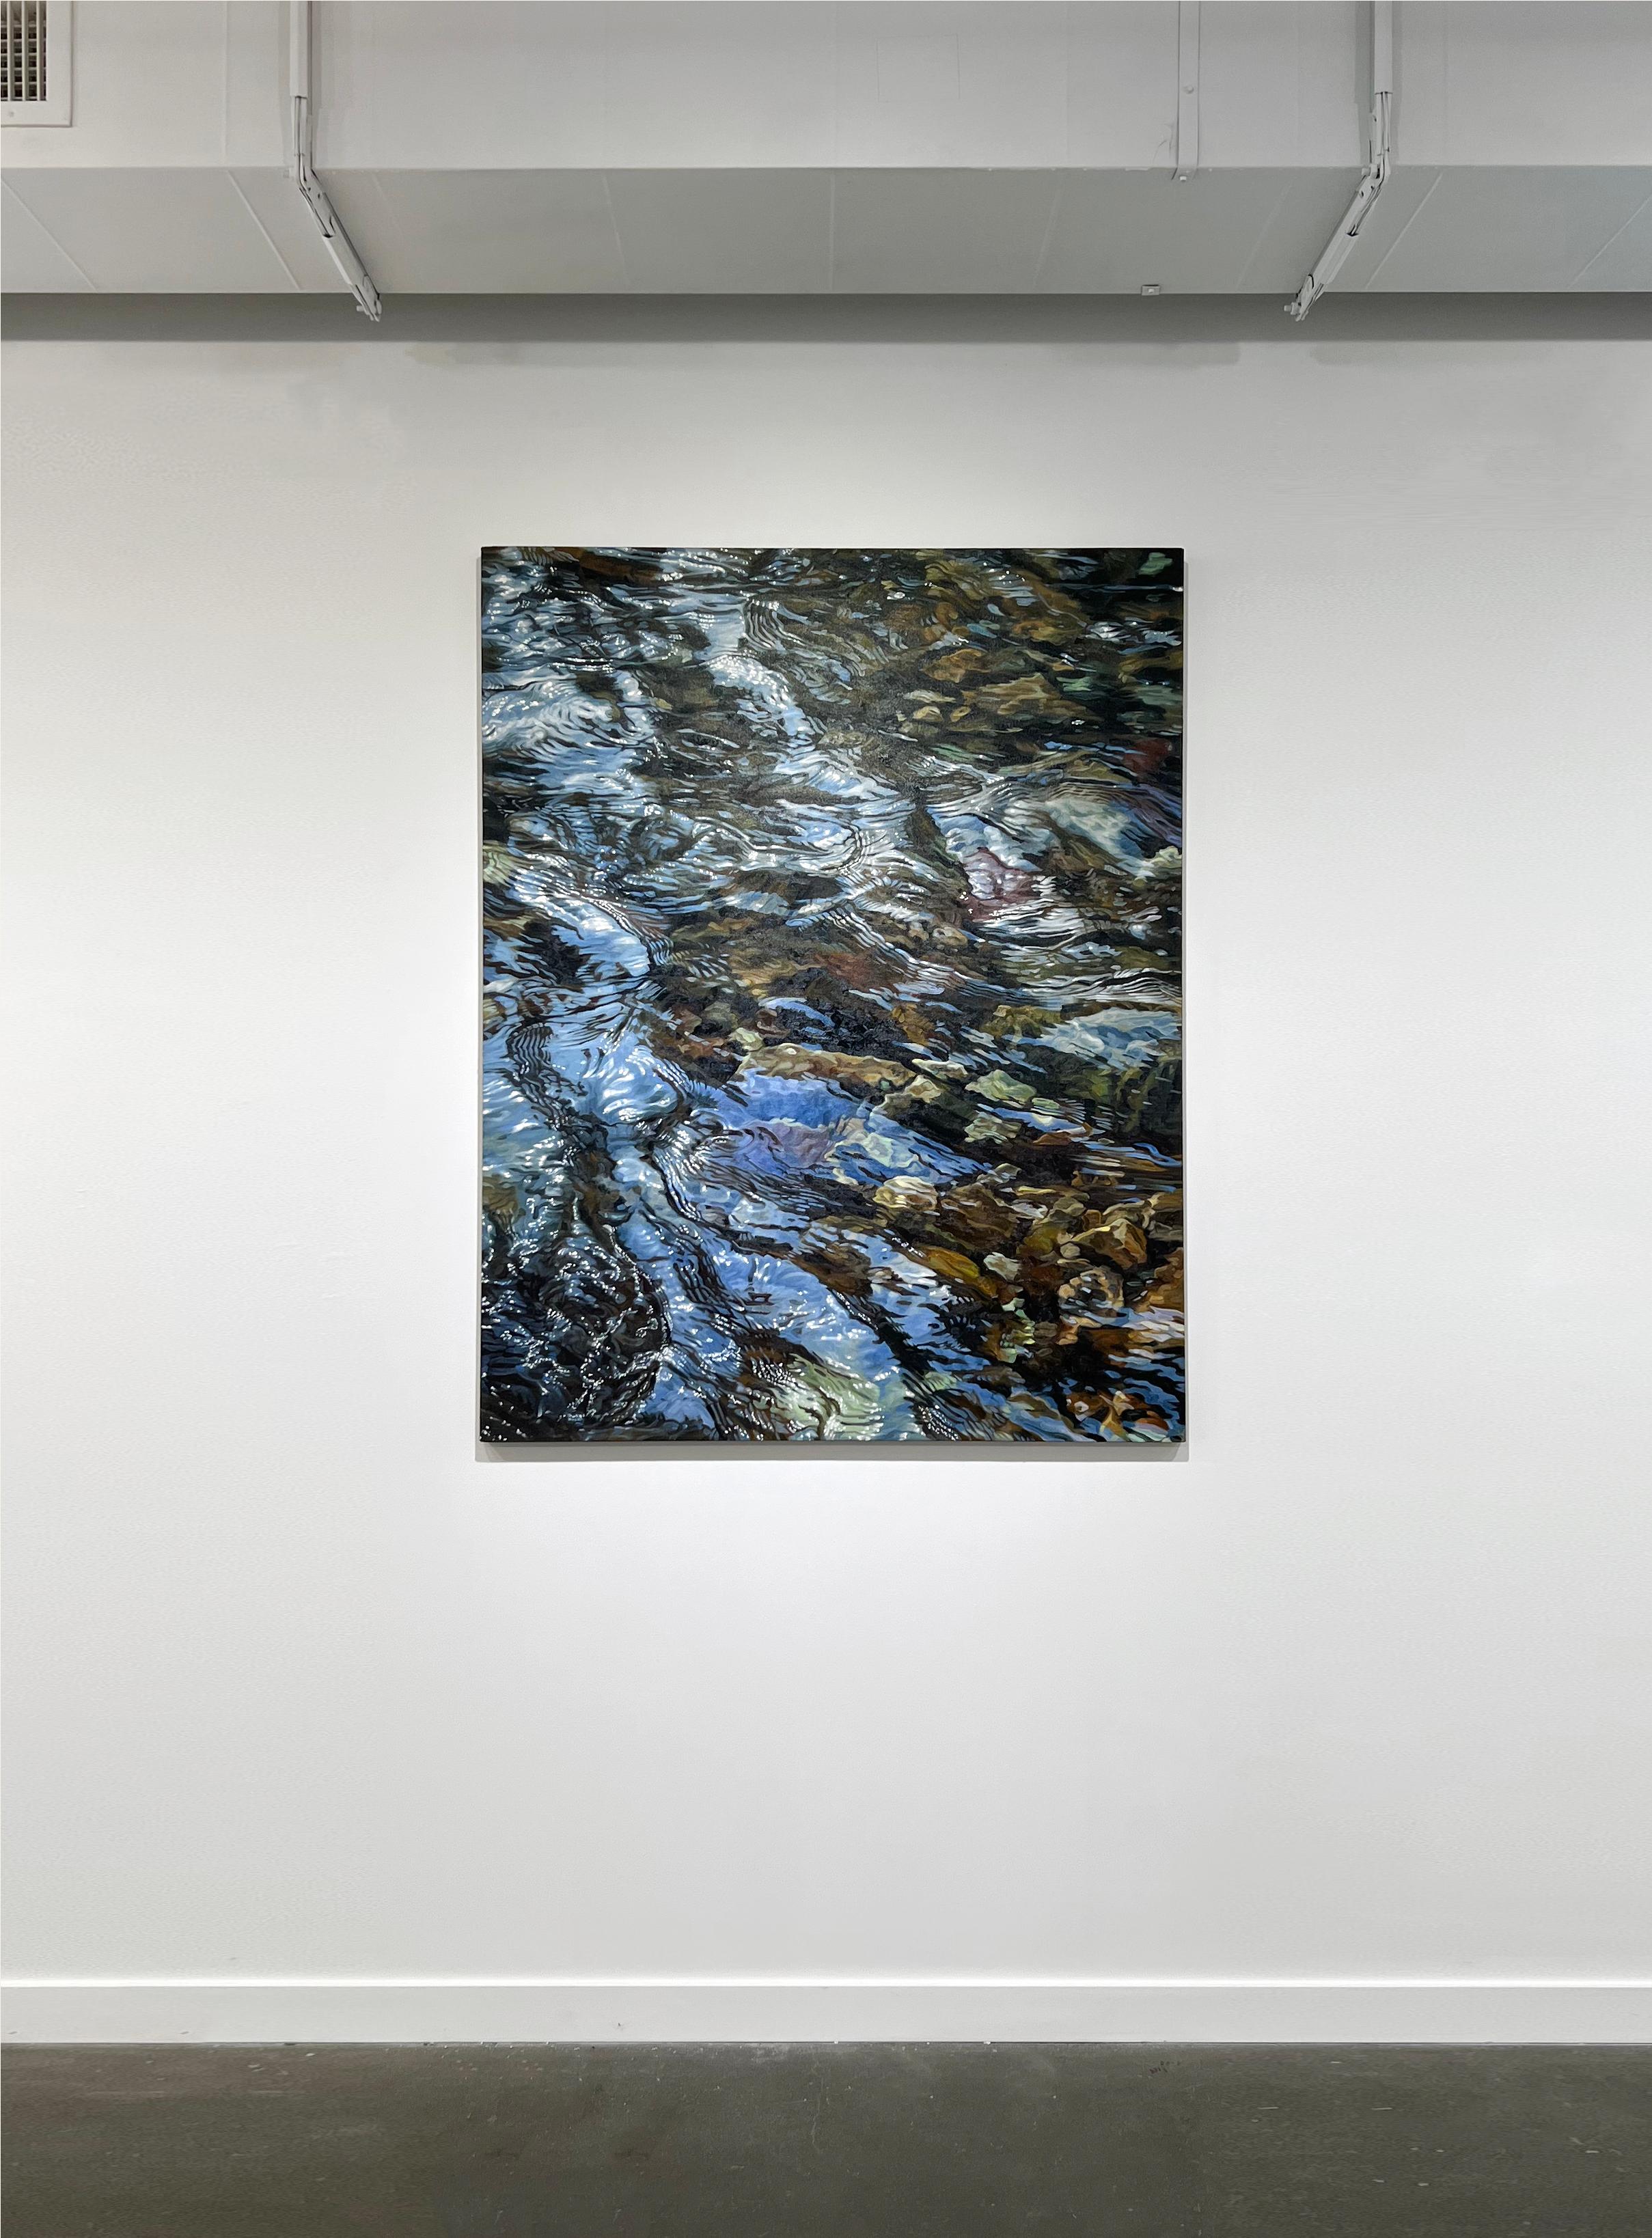 Cette peinture à l'huile réaliste originale sur lin de John Harris présente une vue très détaillée, recadrée et rapprochée de l'eau ondulant légèrement sur les rochers. L'eau reflète la lumière au-dessus d'elle pour ajouter de la dimension et de la